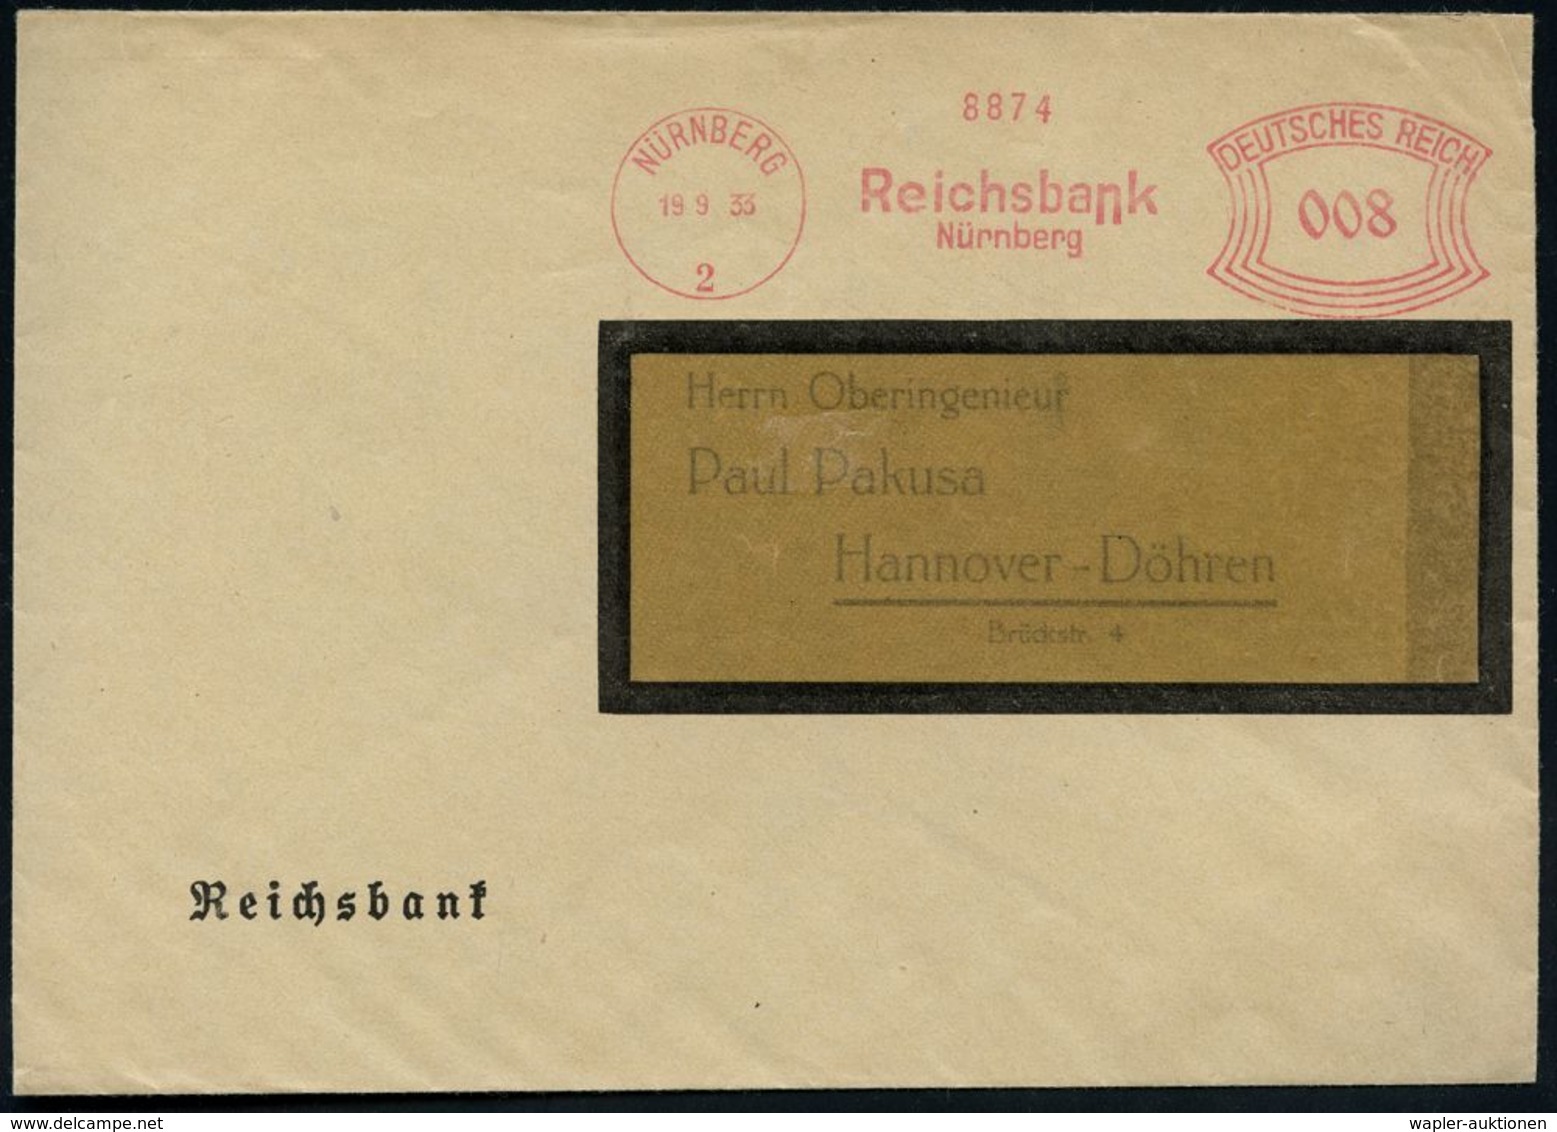 STAATSBANKEN / REICHSBANK / BUNDESBANK : NÜRNBERG/ 2/ Reichsbank 1933 (19.9.) AFS Auf Dienst-Bf.: Reichsbank (Dü.E-1CAh) - Non Classés